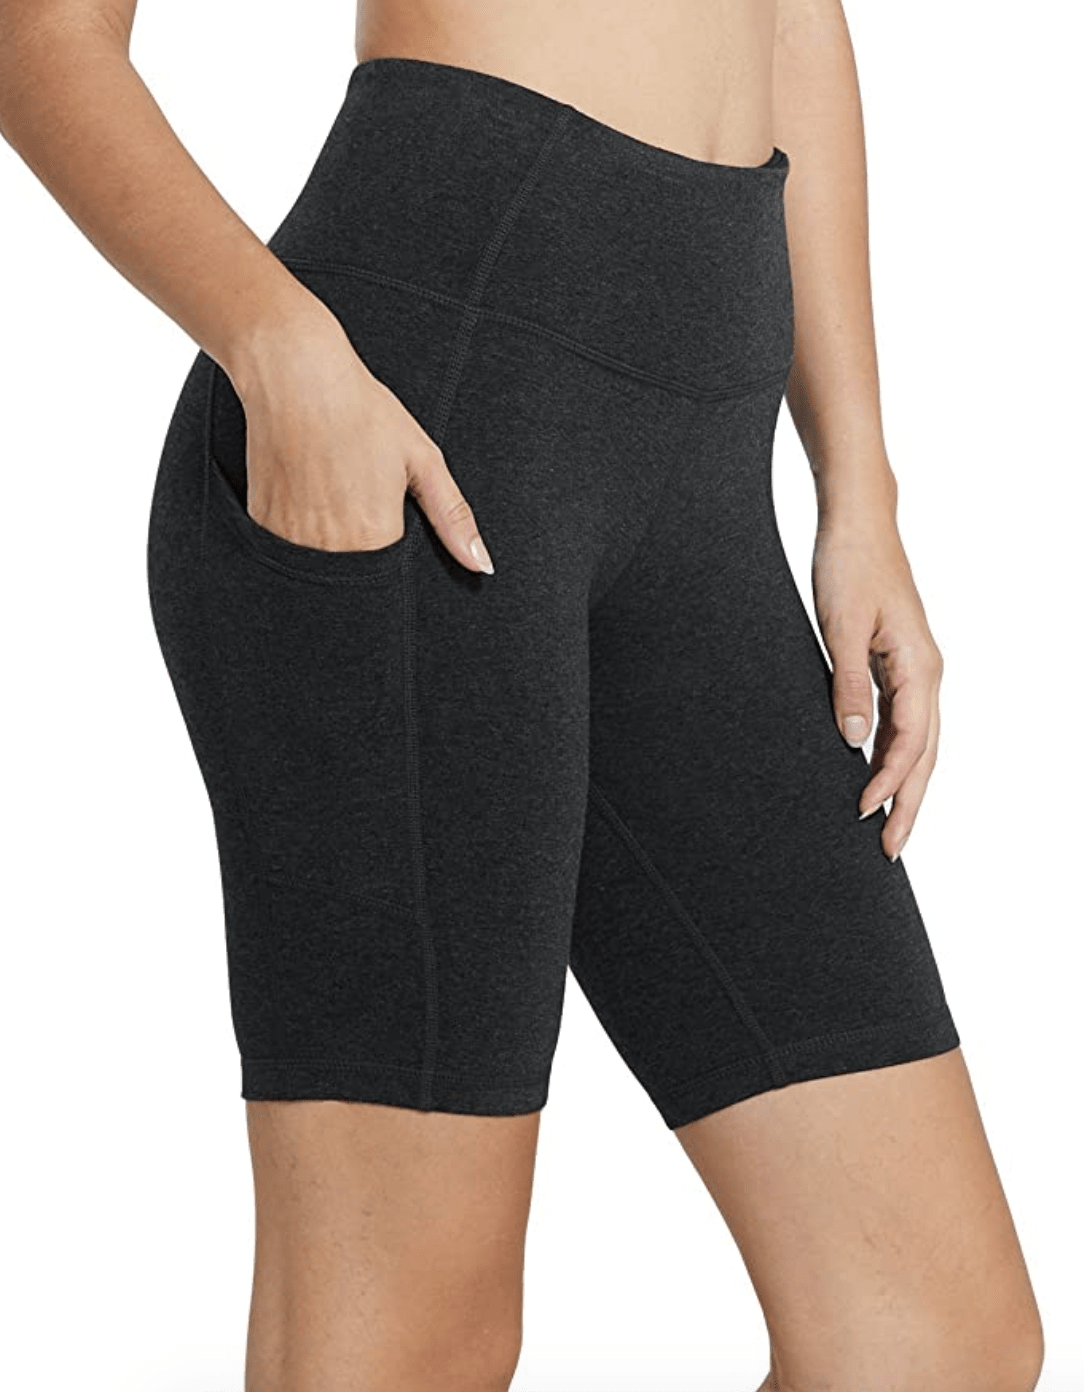 jml slimming shorts review